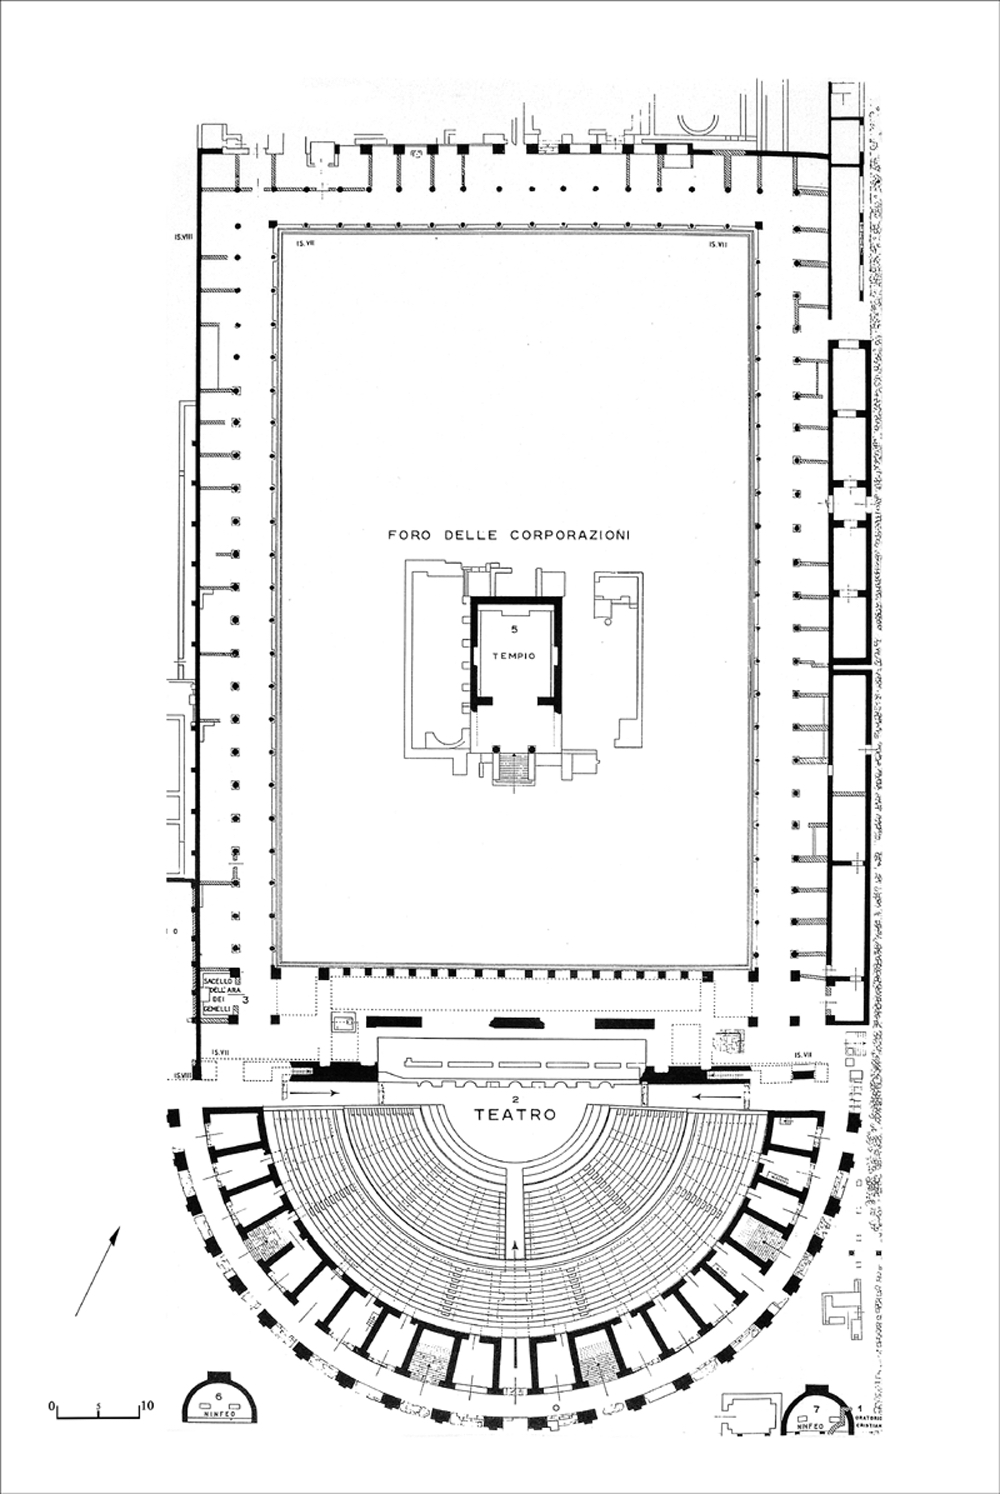 Plan of the Piazzale della Corporazioni from Calza 1953